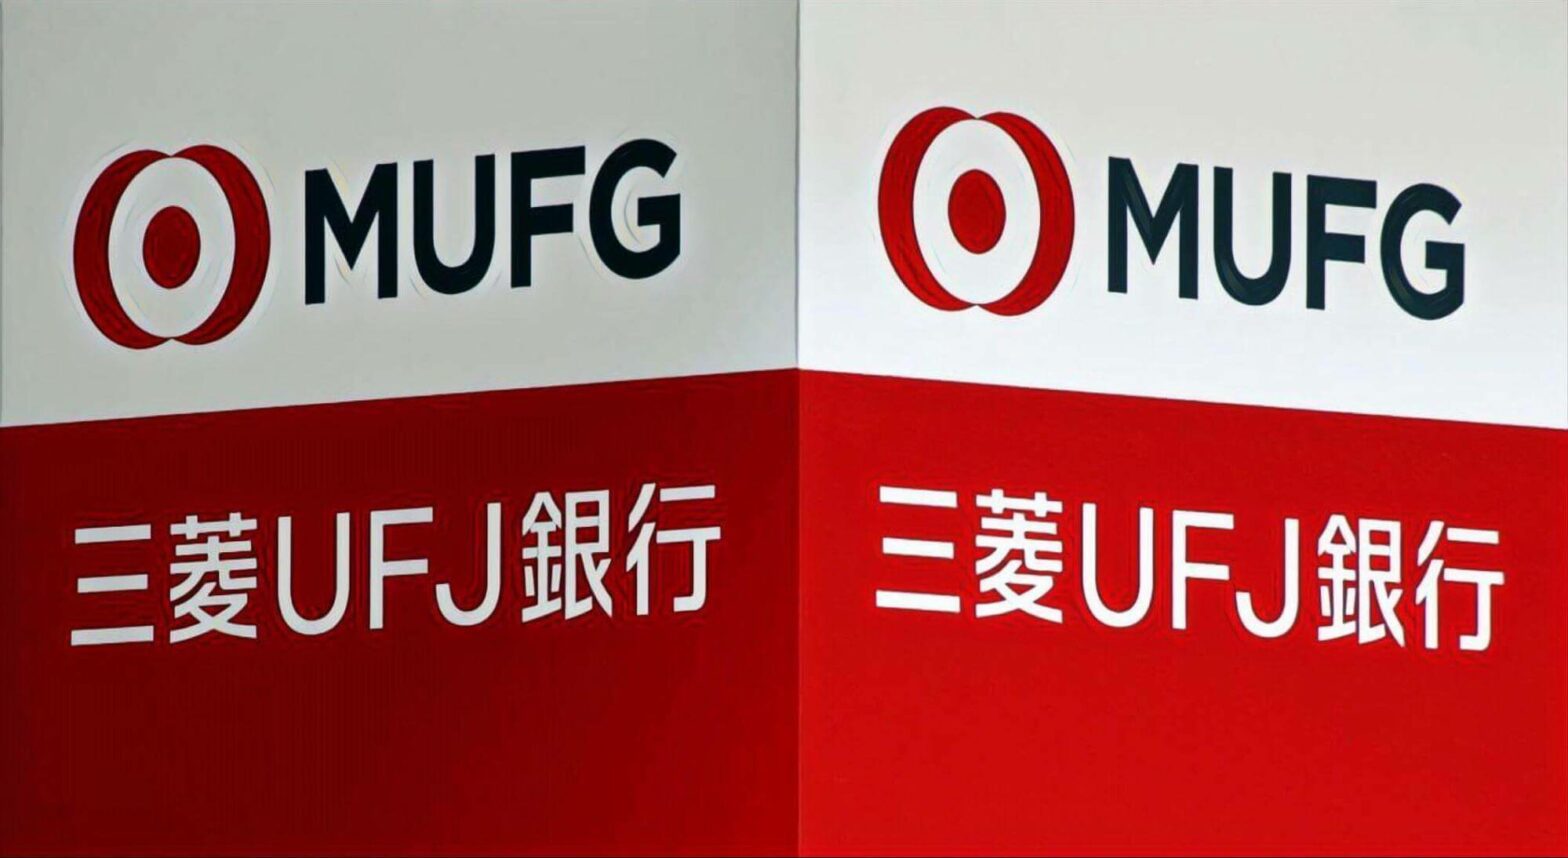 日本最大銀行MUFG即將推出區塊鏈支付網路